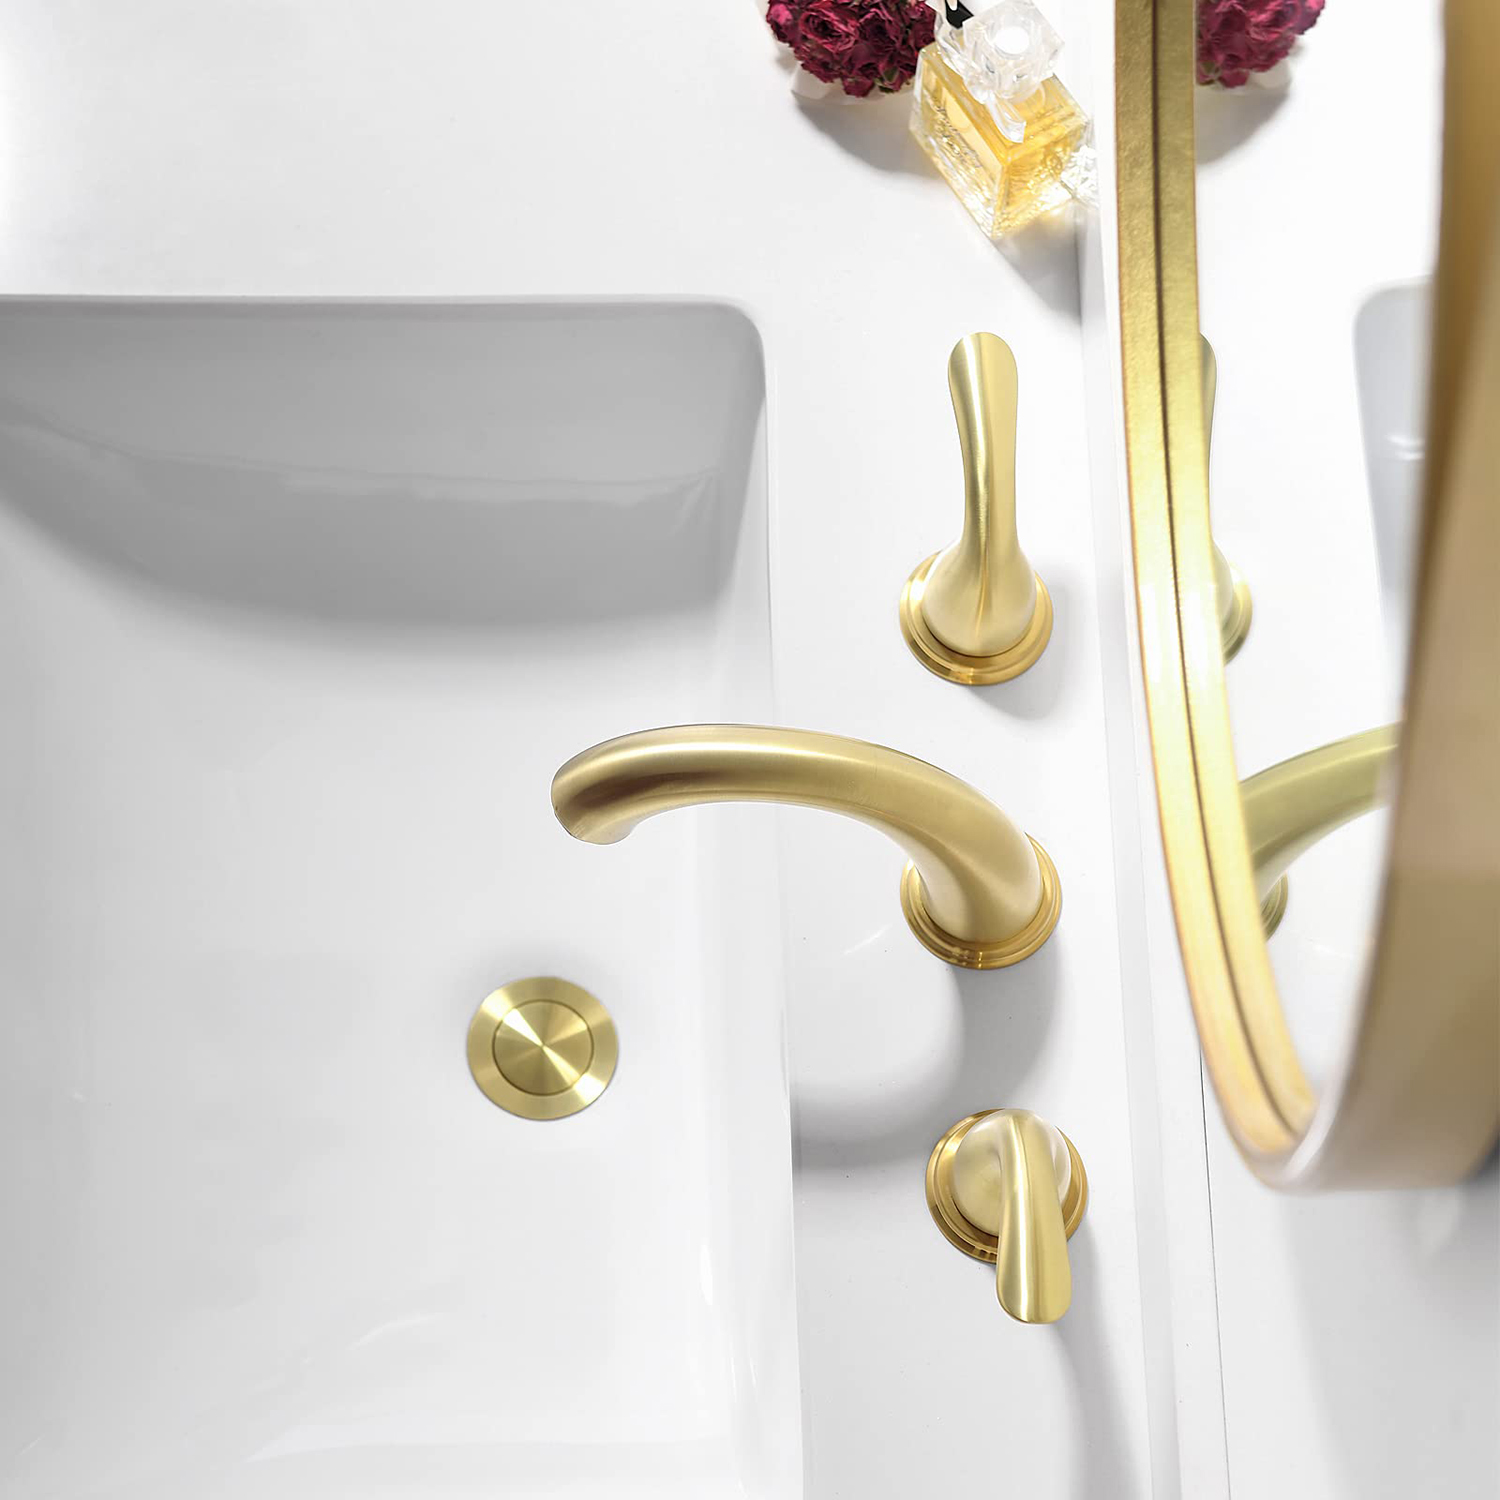 Aquacubic Широко распространенный матовый золотой модный американский стиль с двойной ручкой и тремя отверстиями для ванной комнаты Смеситель для умывальника